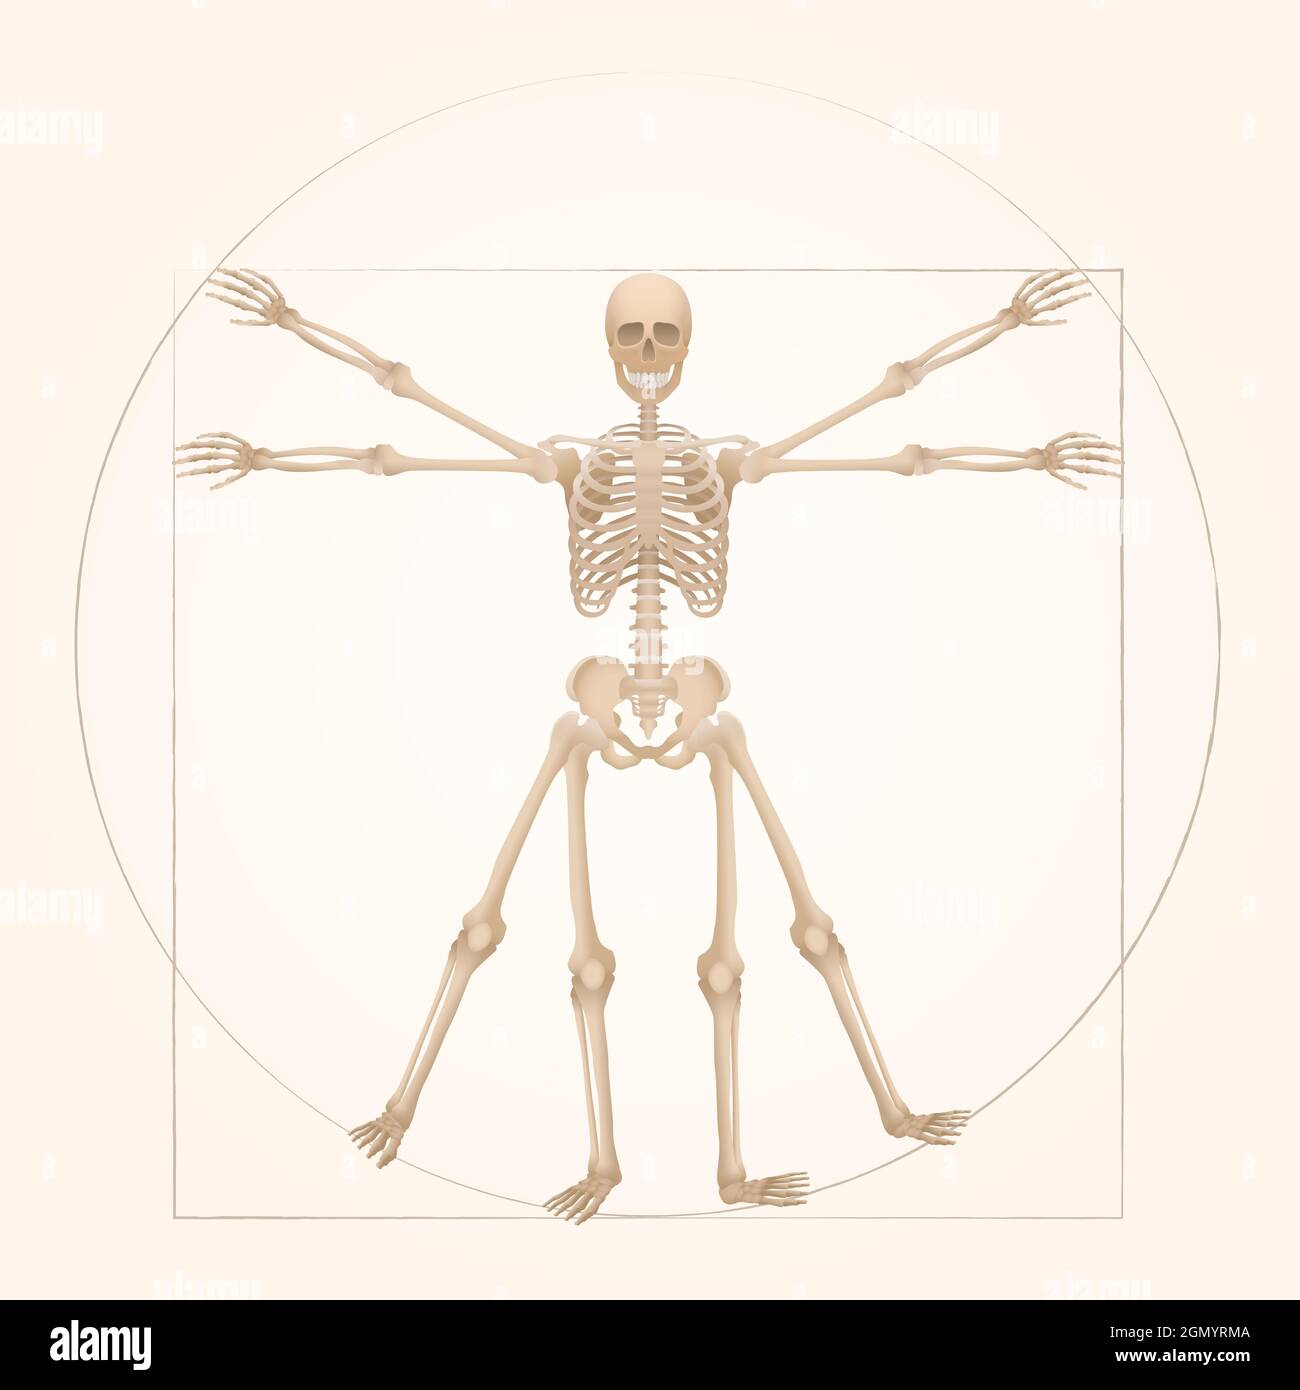 Scheletro vitruviano - geometria sacra nell'arte grafica rappresentata da una figura scheletrica con proporzioni anatomiche di una persona adulta. Foto Stock